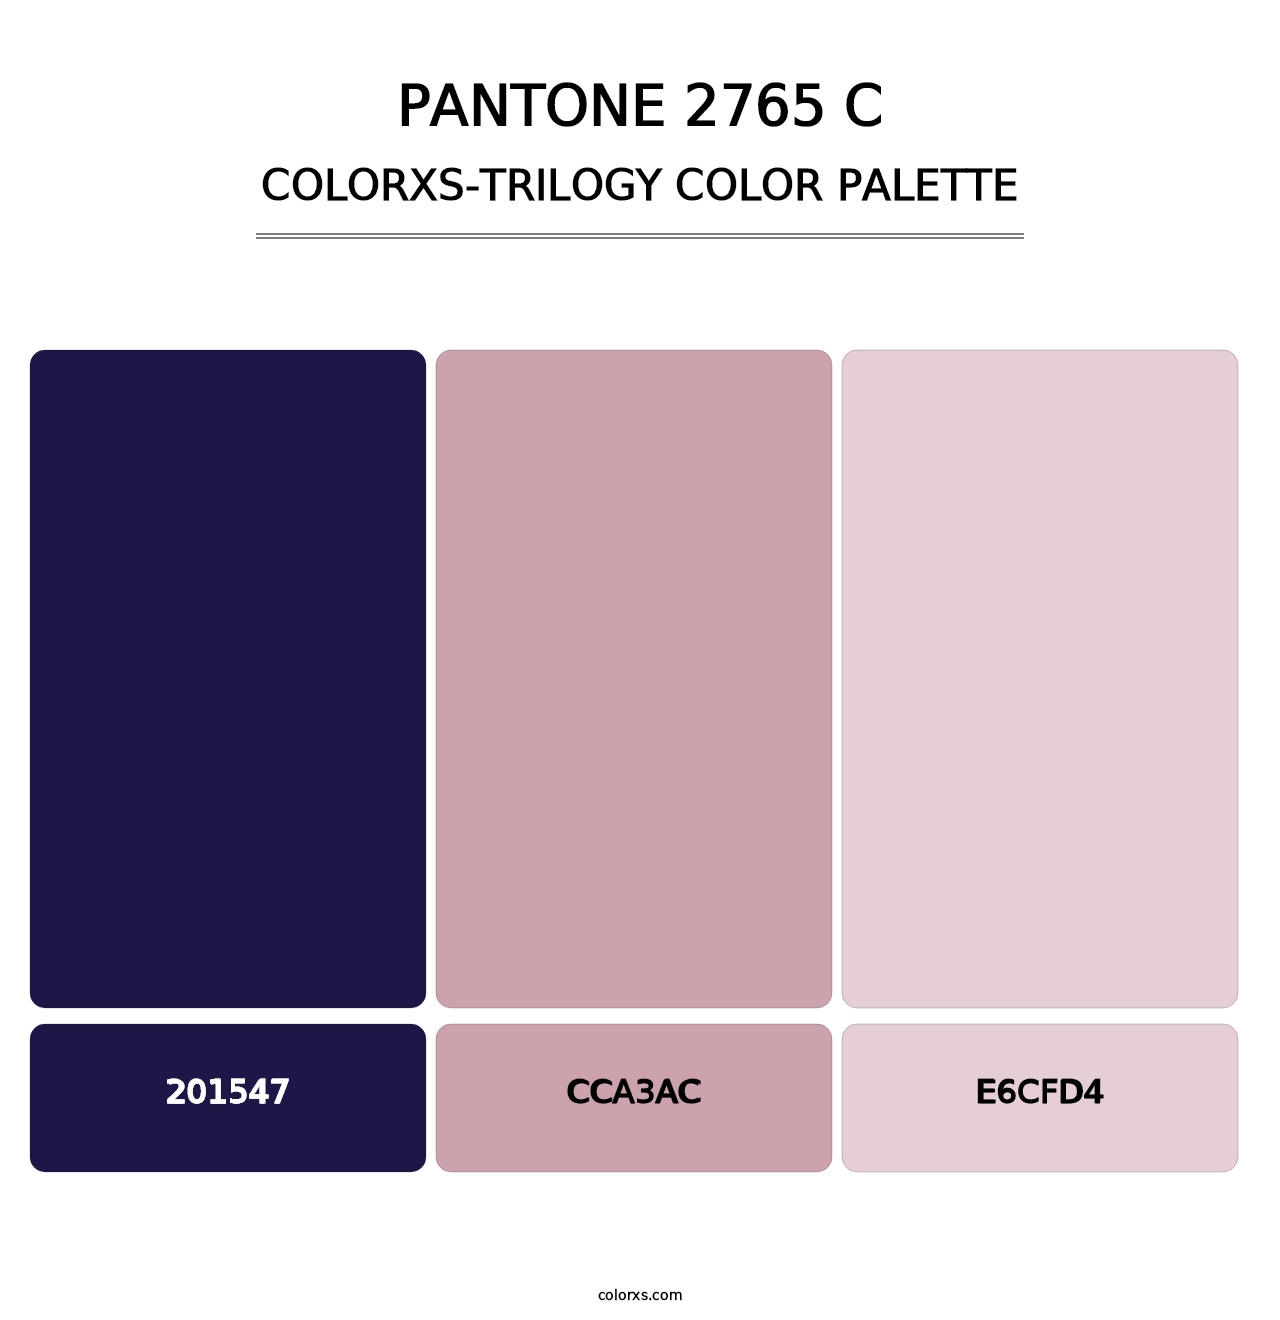 PANTONE 2765 C - Colorxs Trilogy Palette